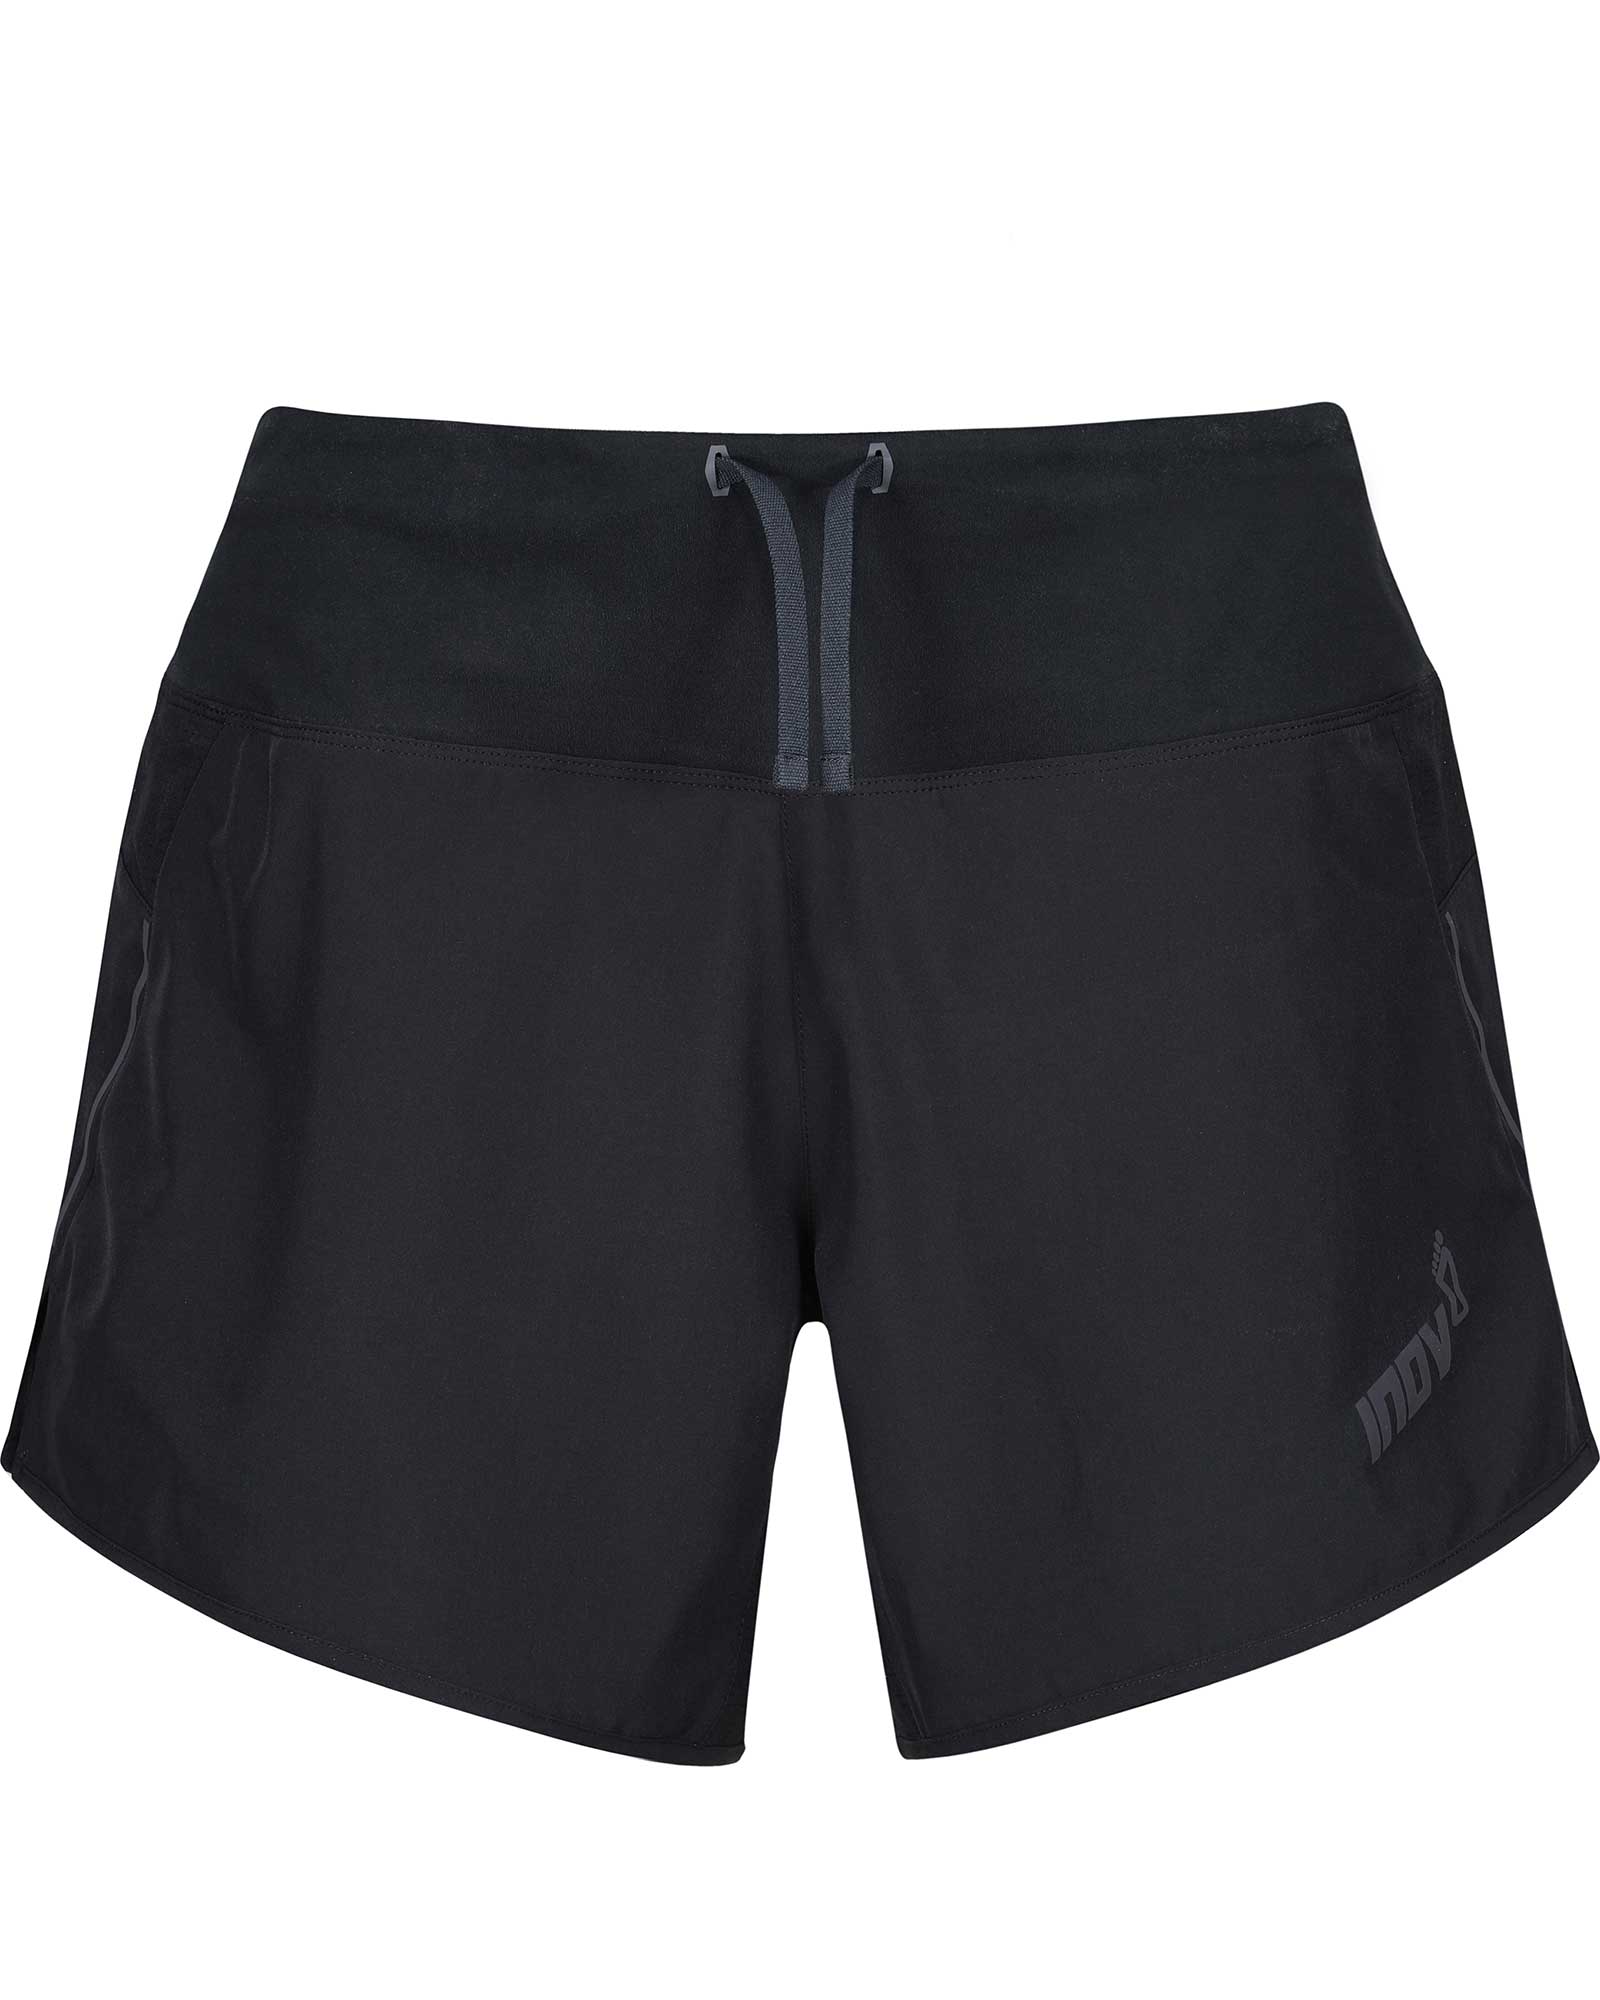 Inov 8 Trail Lite Women’s 5" Shorts - black 12